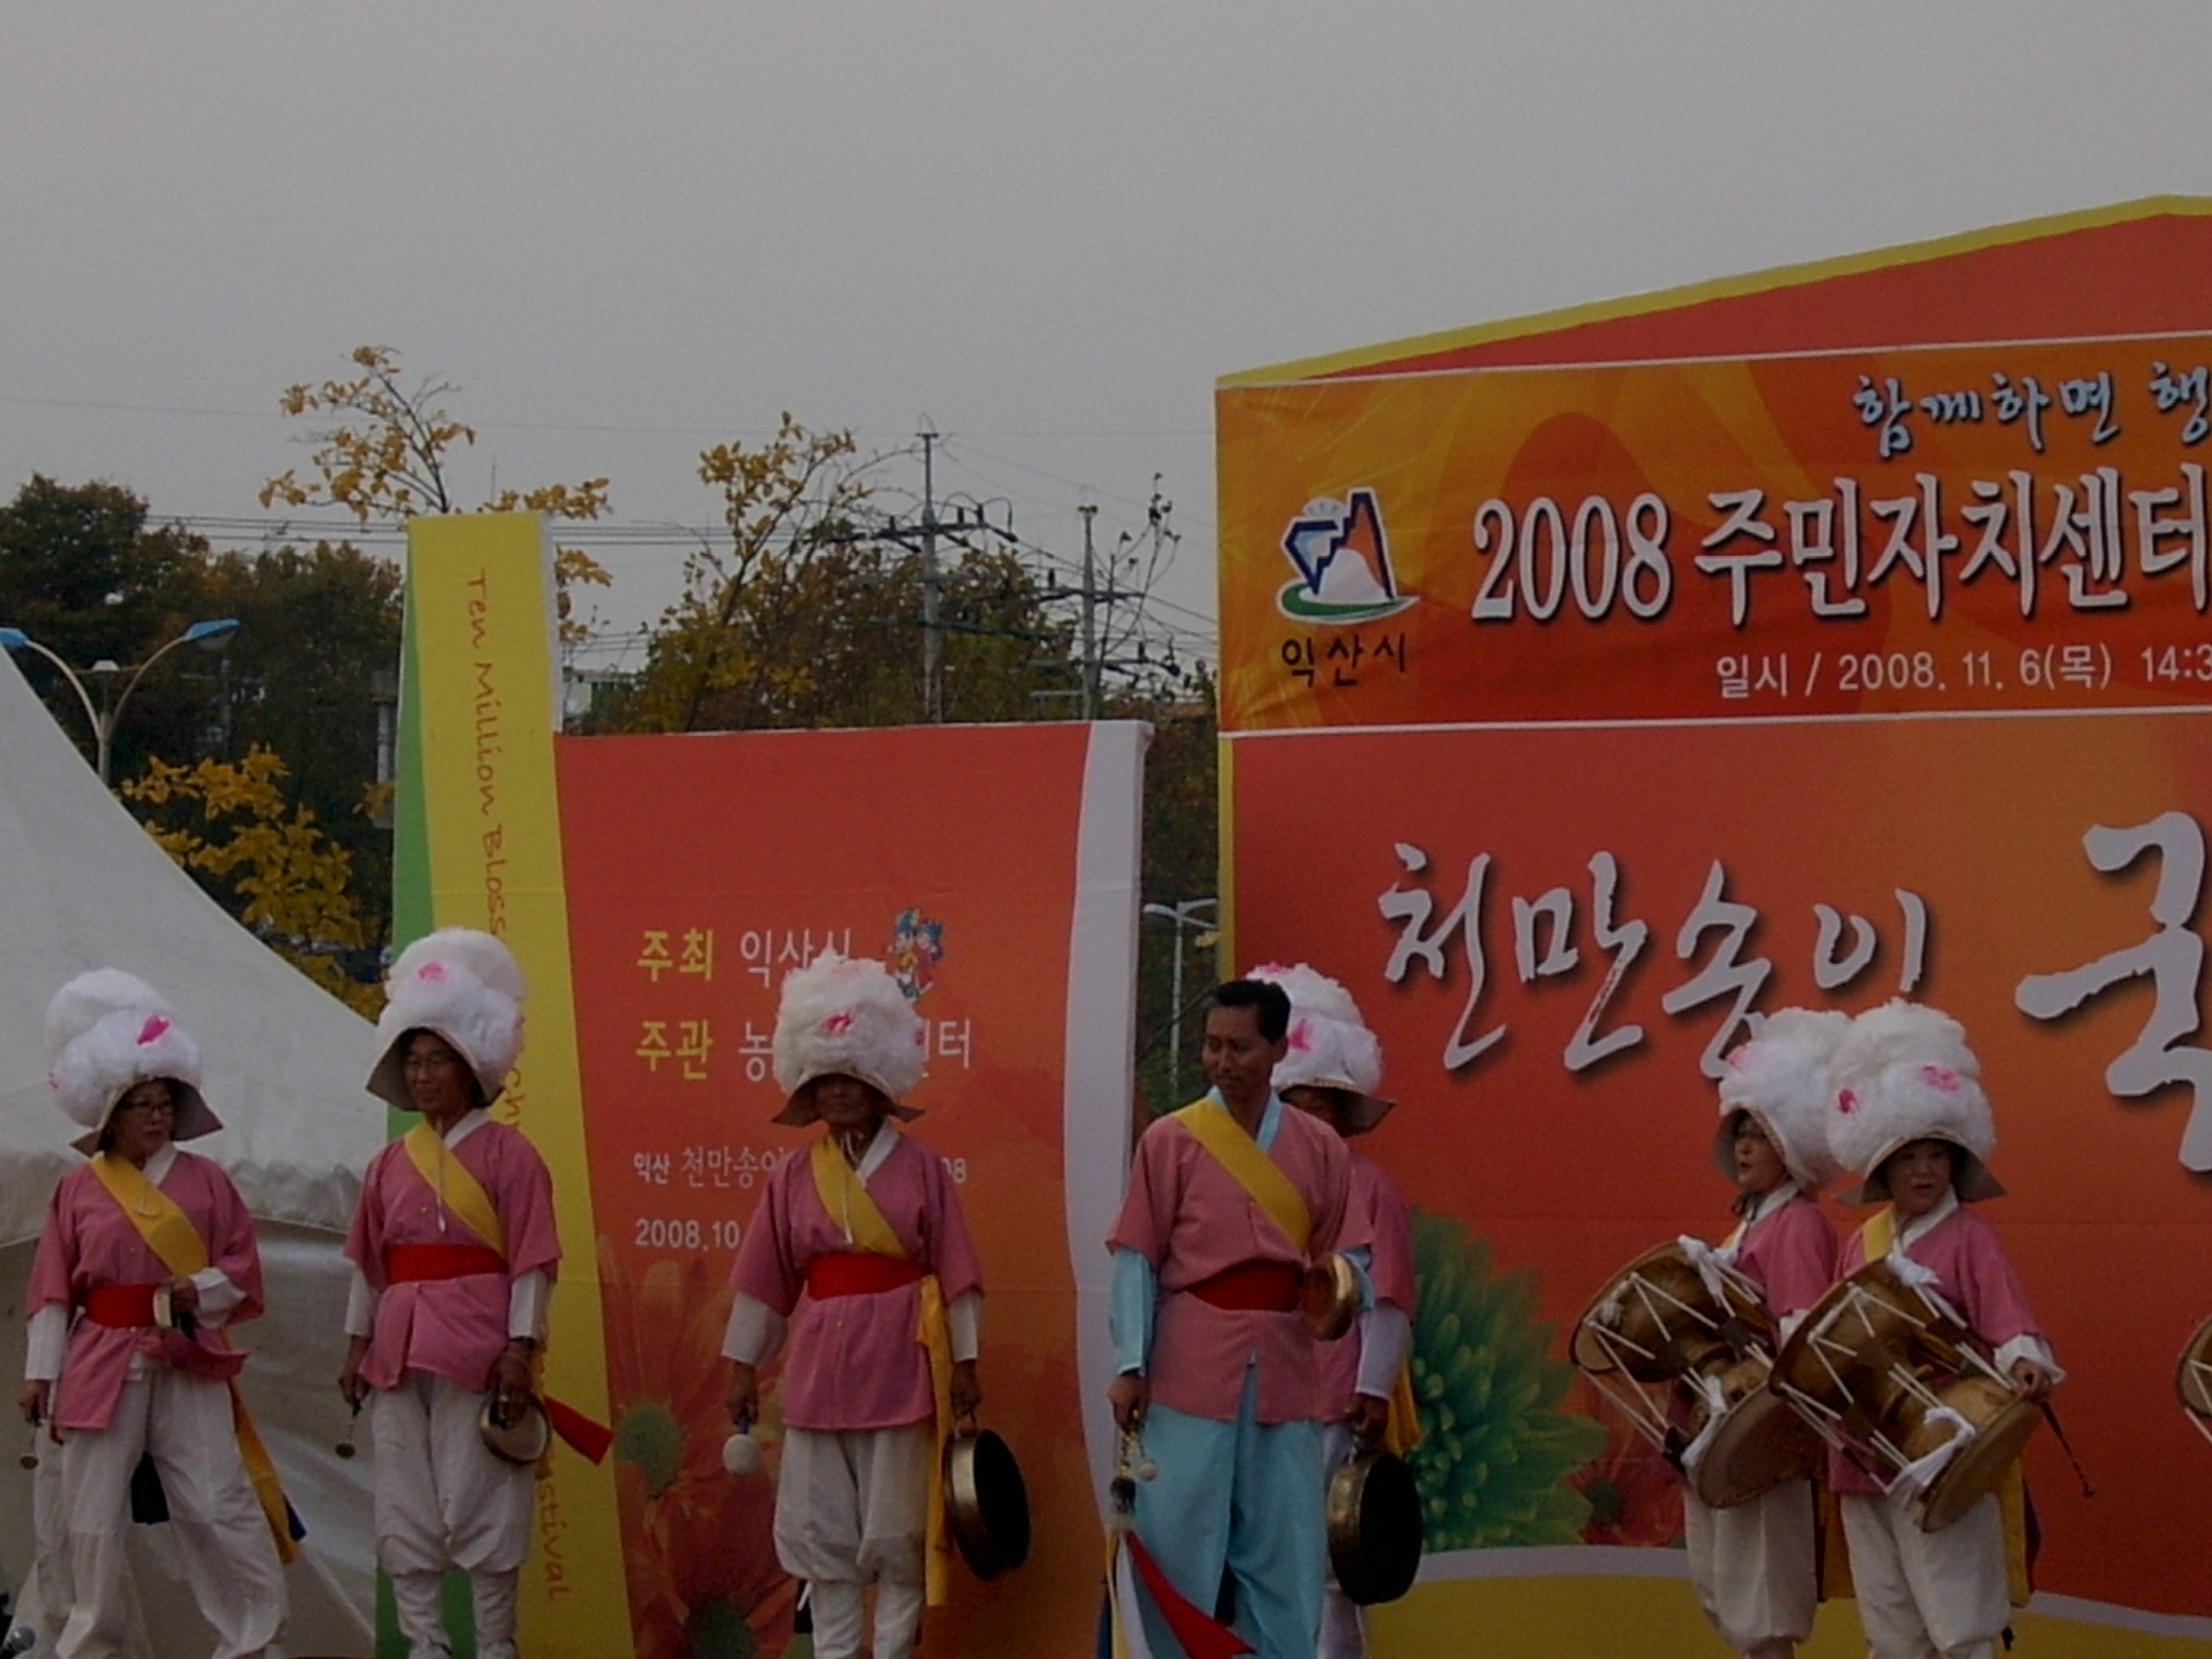 2008 주민자치센터 프로그램발표회 참가사진(풍물)1